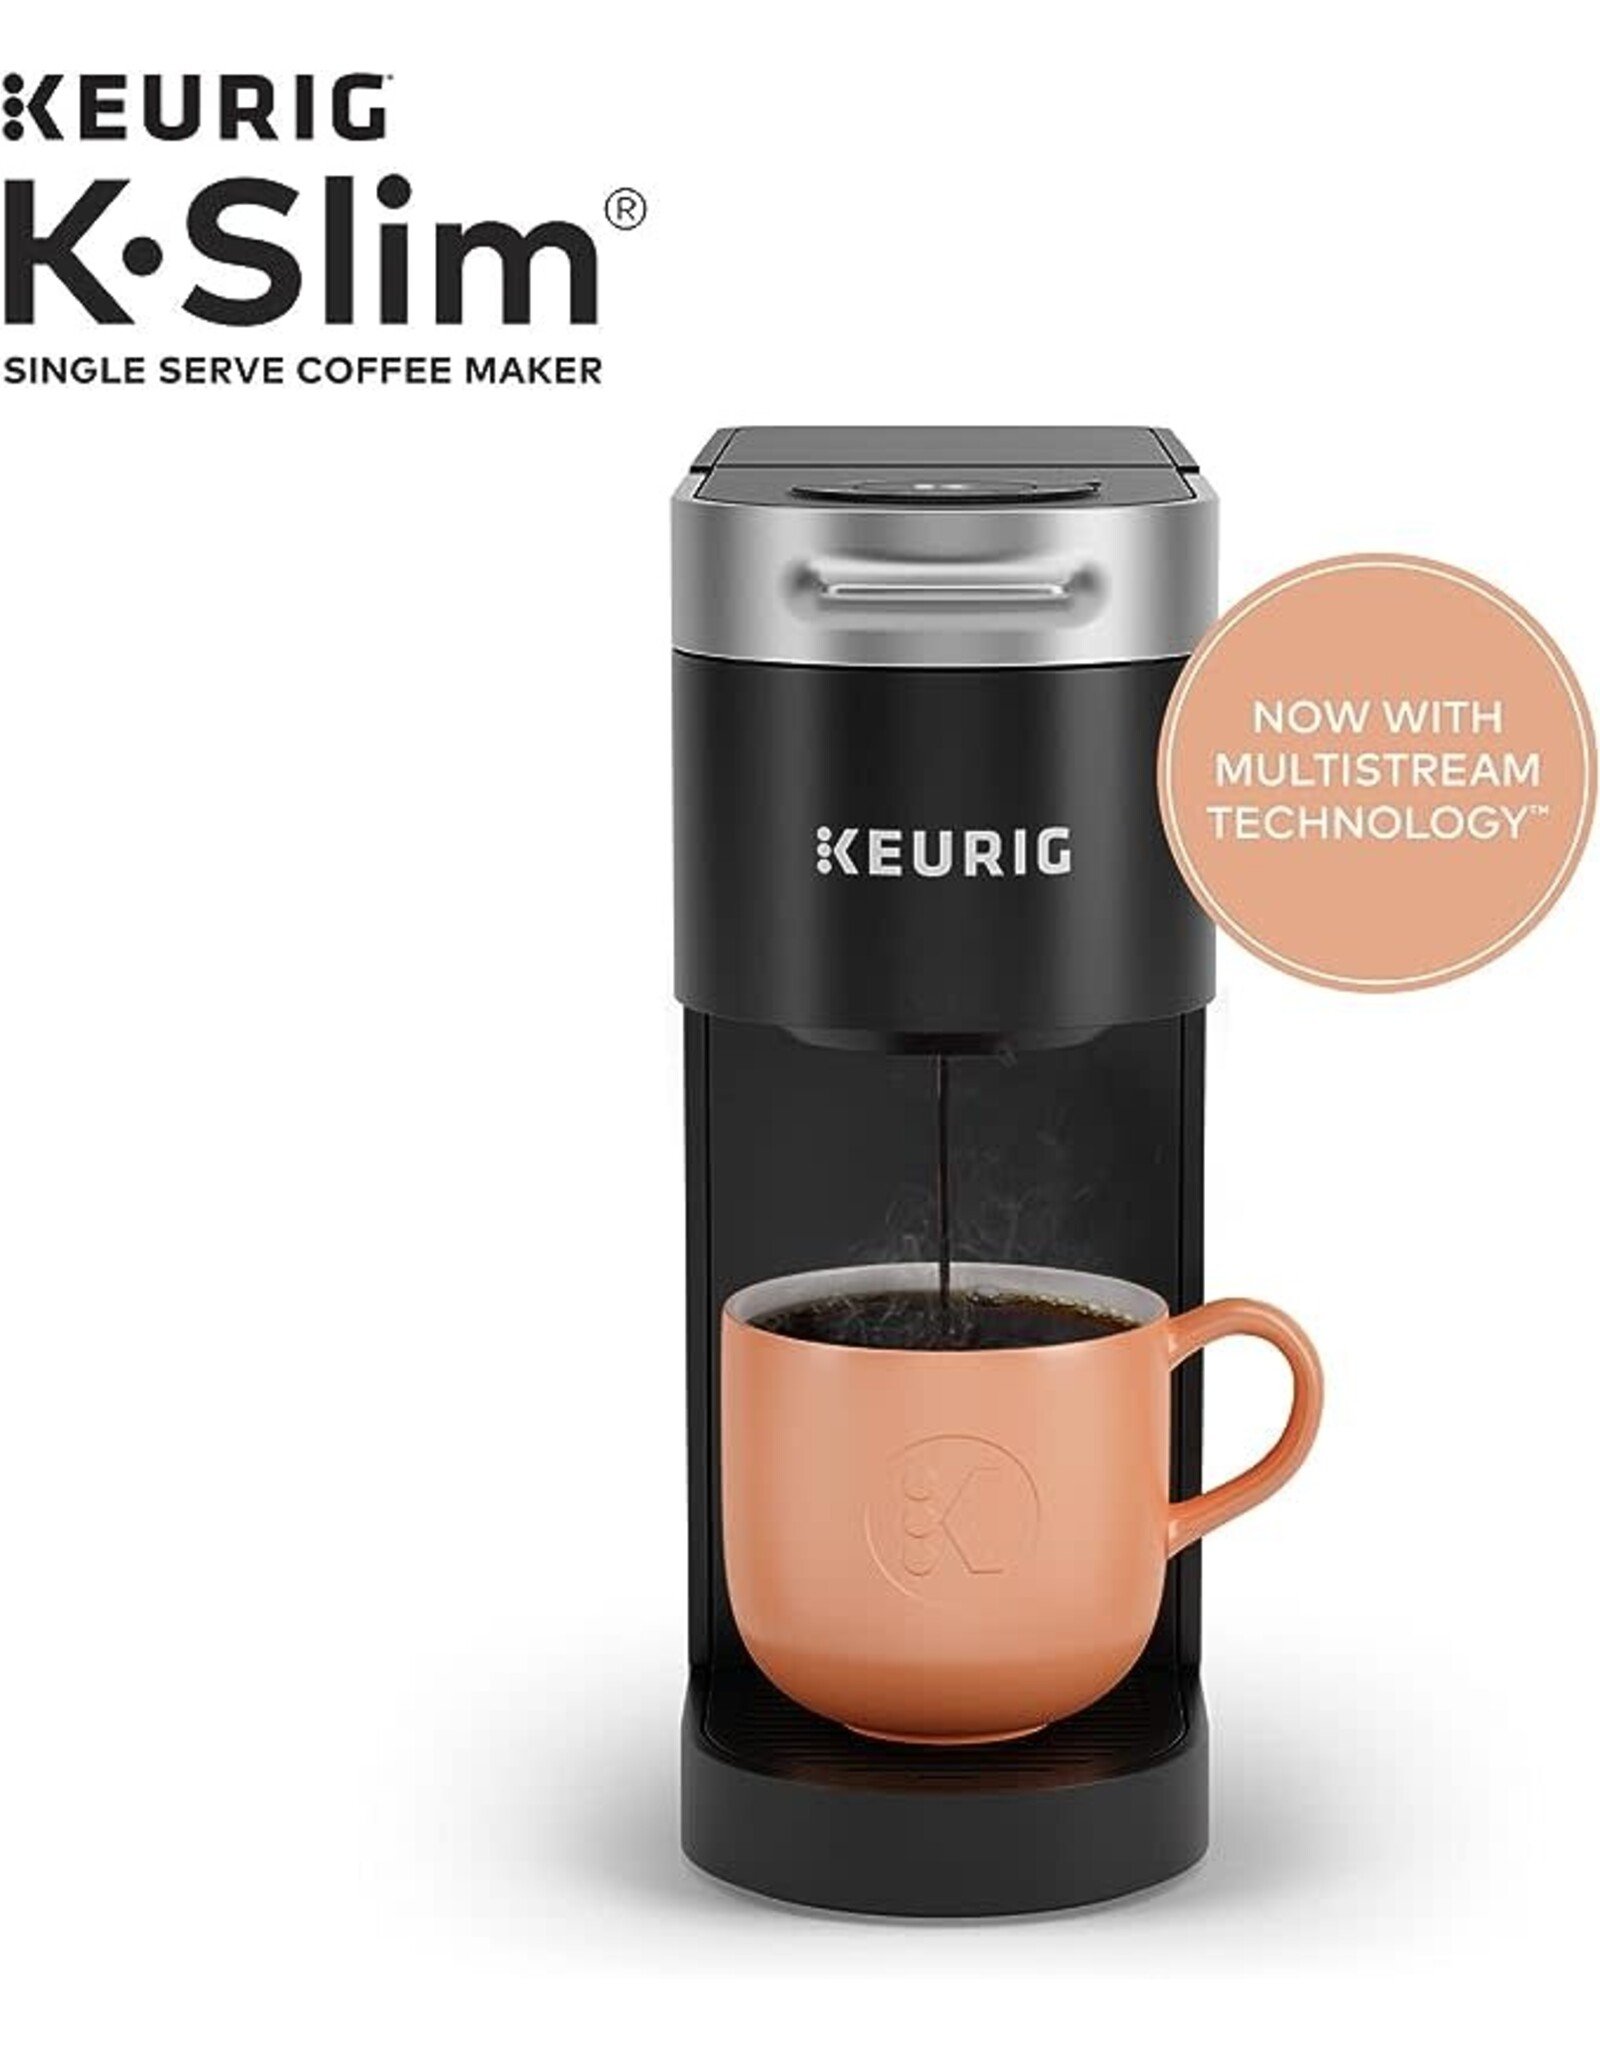 https://cdn.shoplightspeed.com/shops/634268/files/59248697/1600x2048x2/keurig-5000350119-keurig-k-slim-single-serve-k-cup.jpg